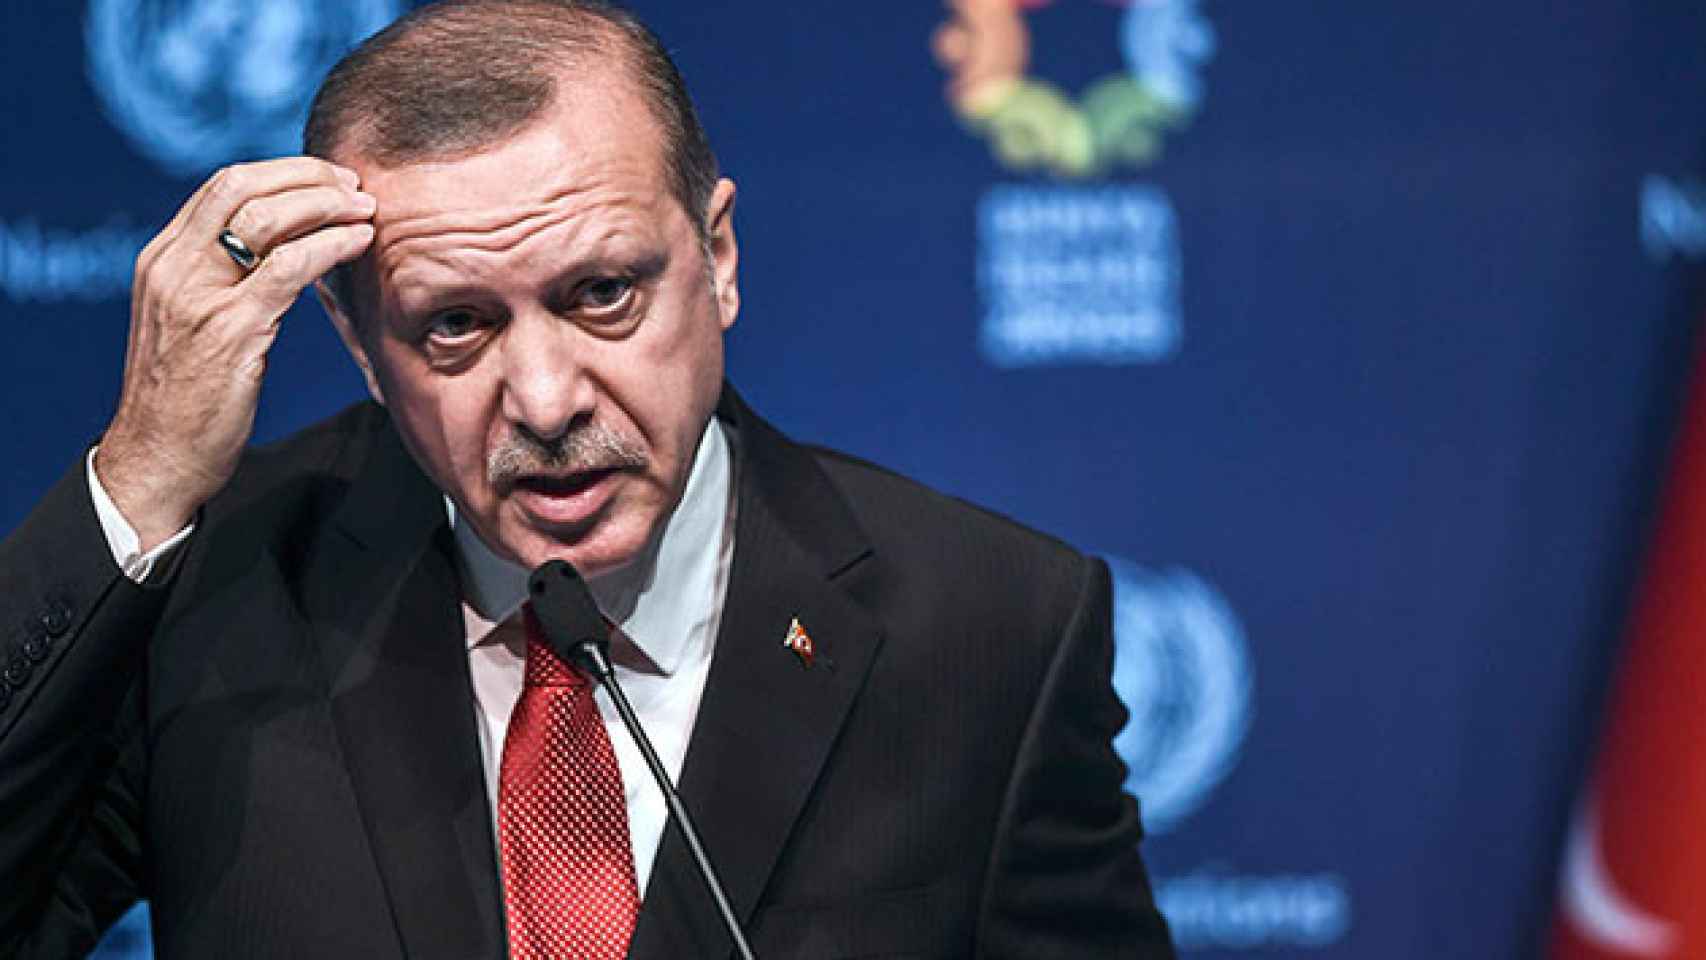 El presidente de Turquía, Recep Tayyip Erdogan, en una imagen de archivo. / EFE